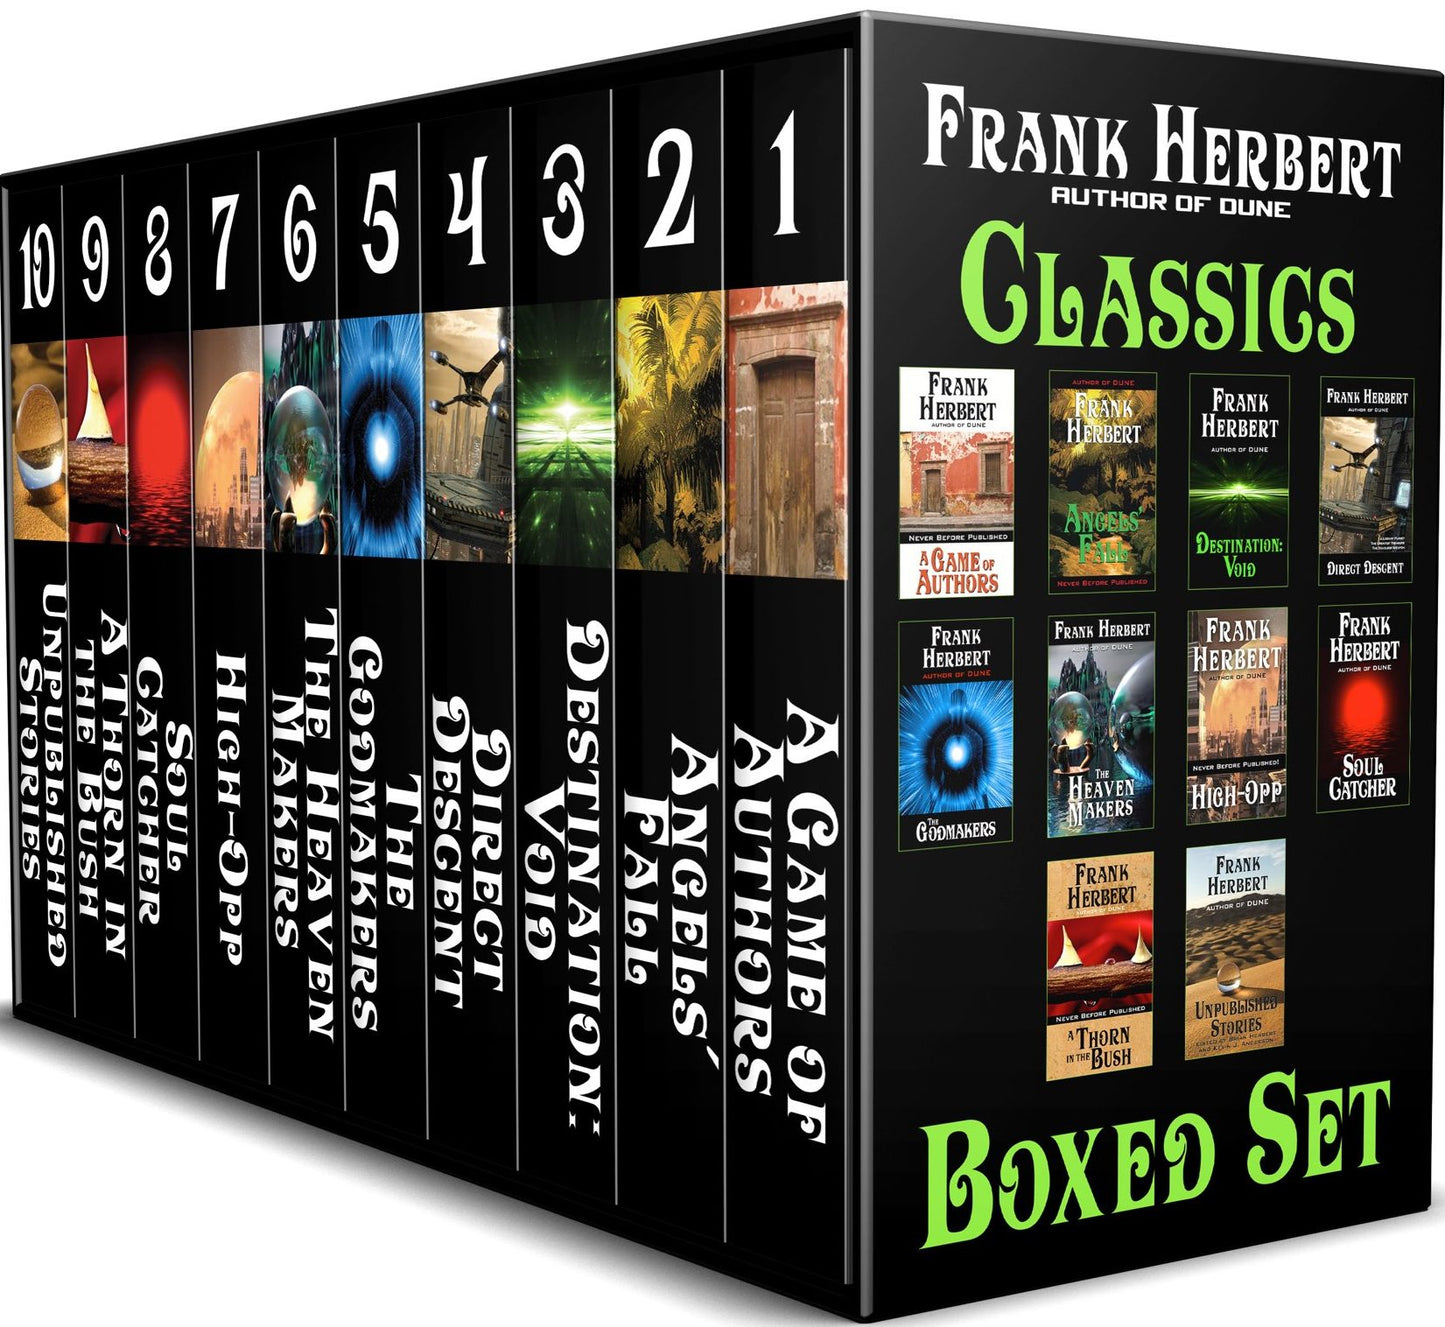 The Frank Herbert Classics Boxed Set